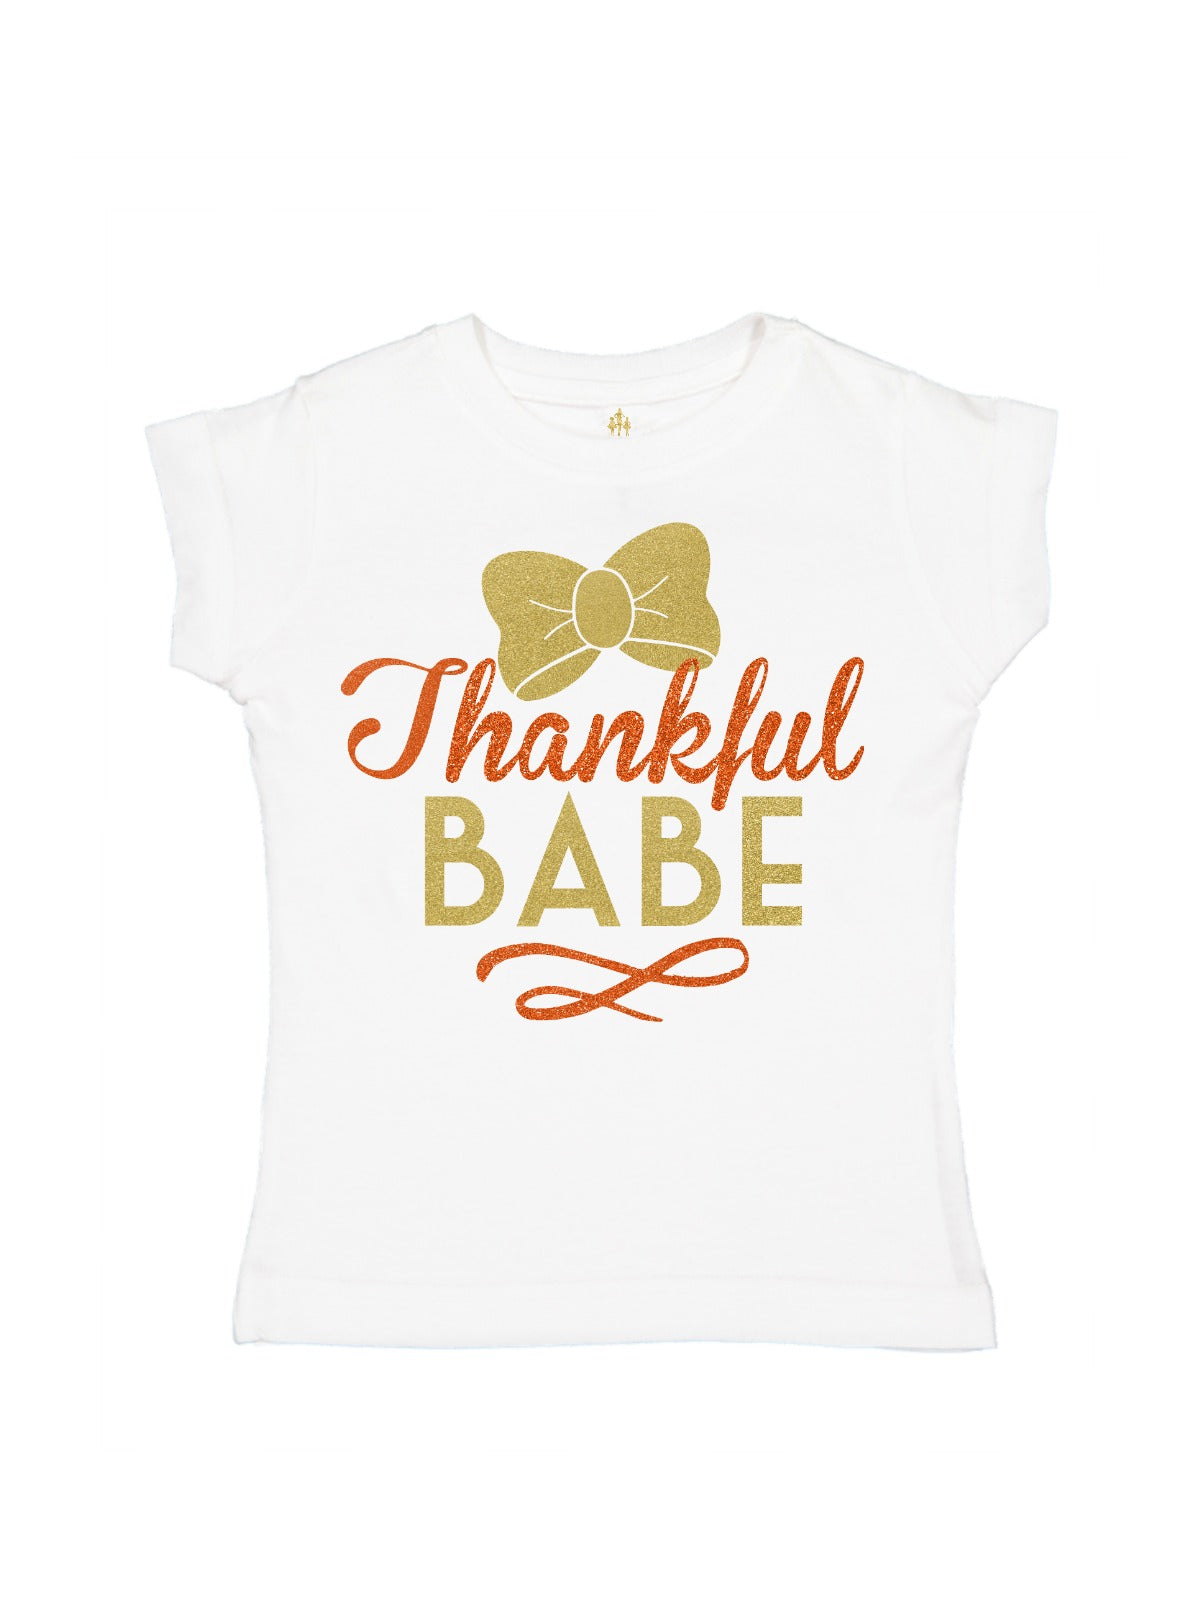 Thankful Babe Girls Thanksgiving Shirt